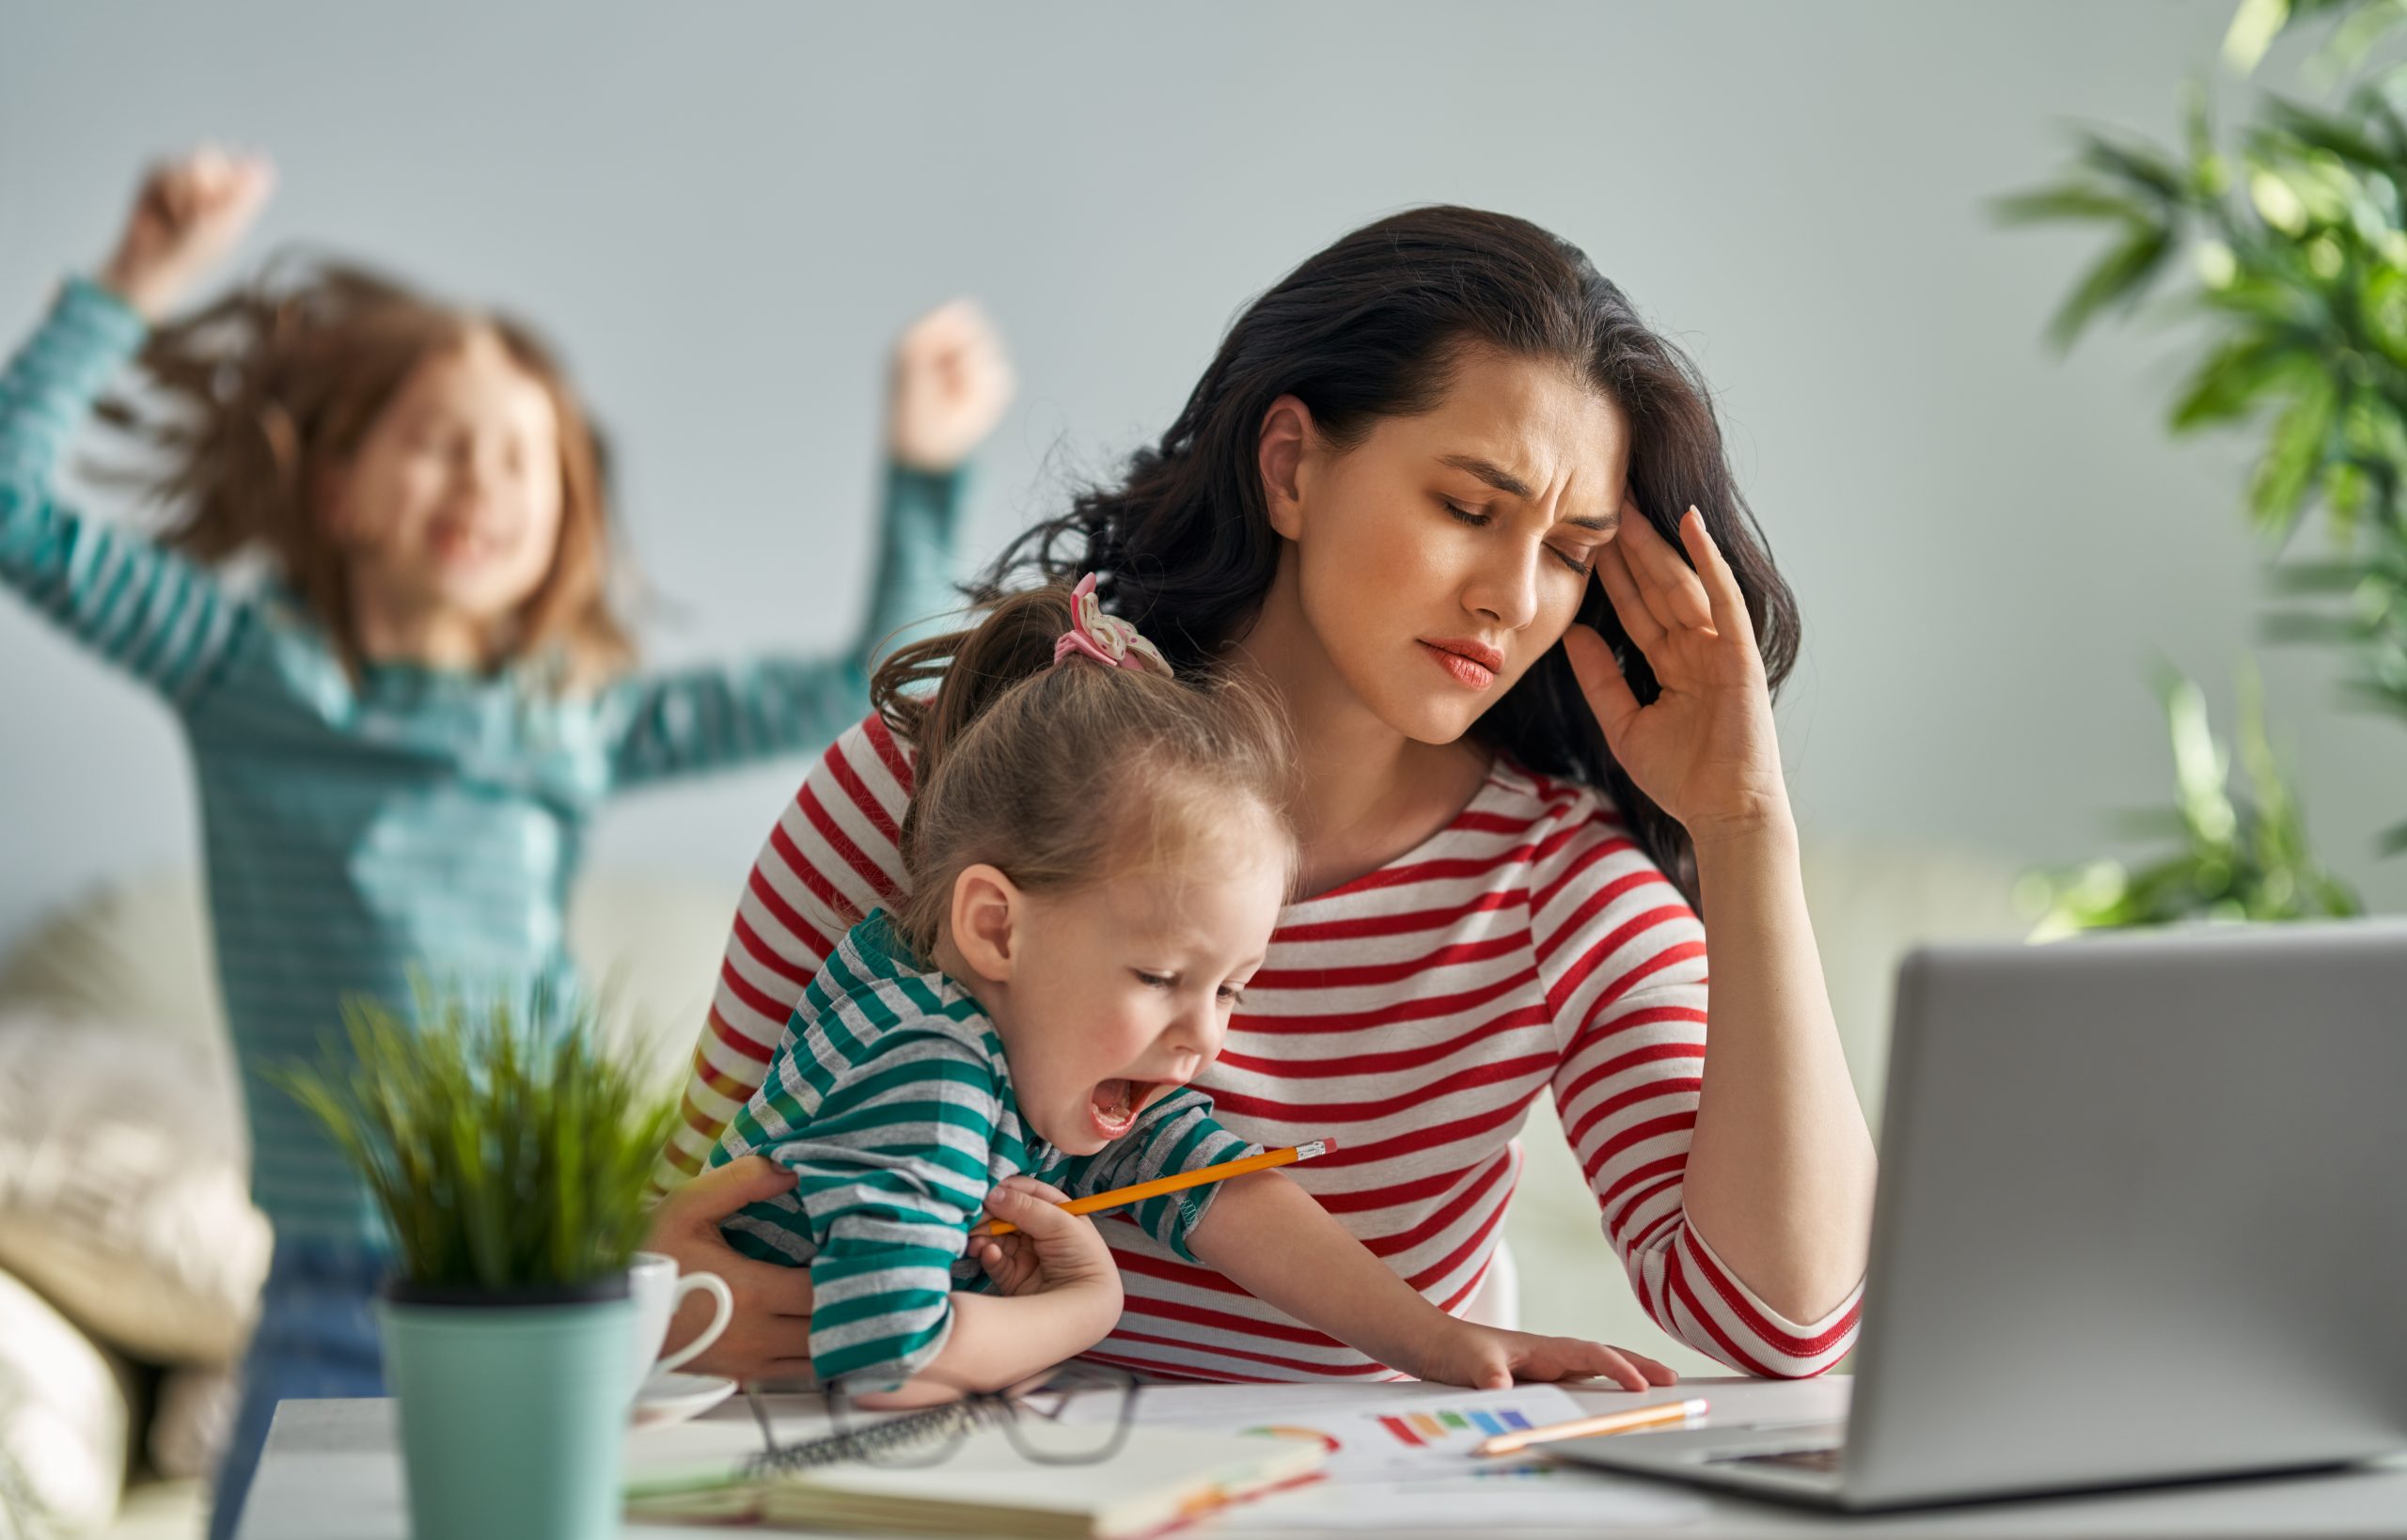 Работат. Мама в стрессе. "Дети и стресс". Занятая мама. Стресс дети родители.